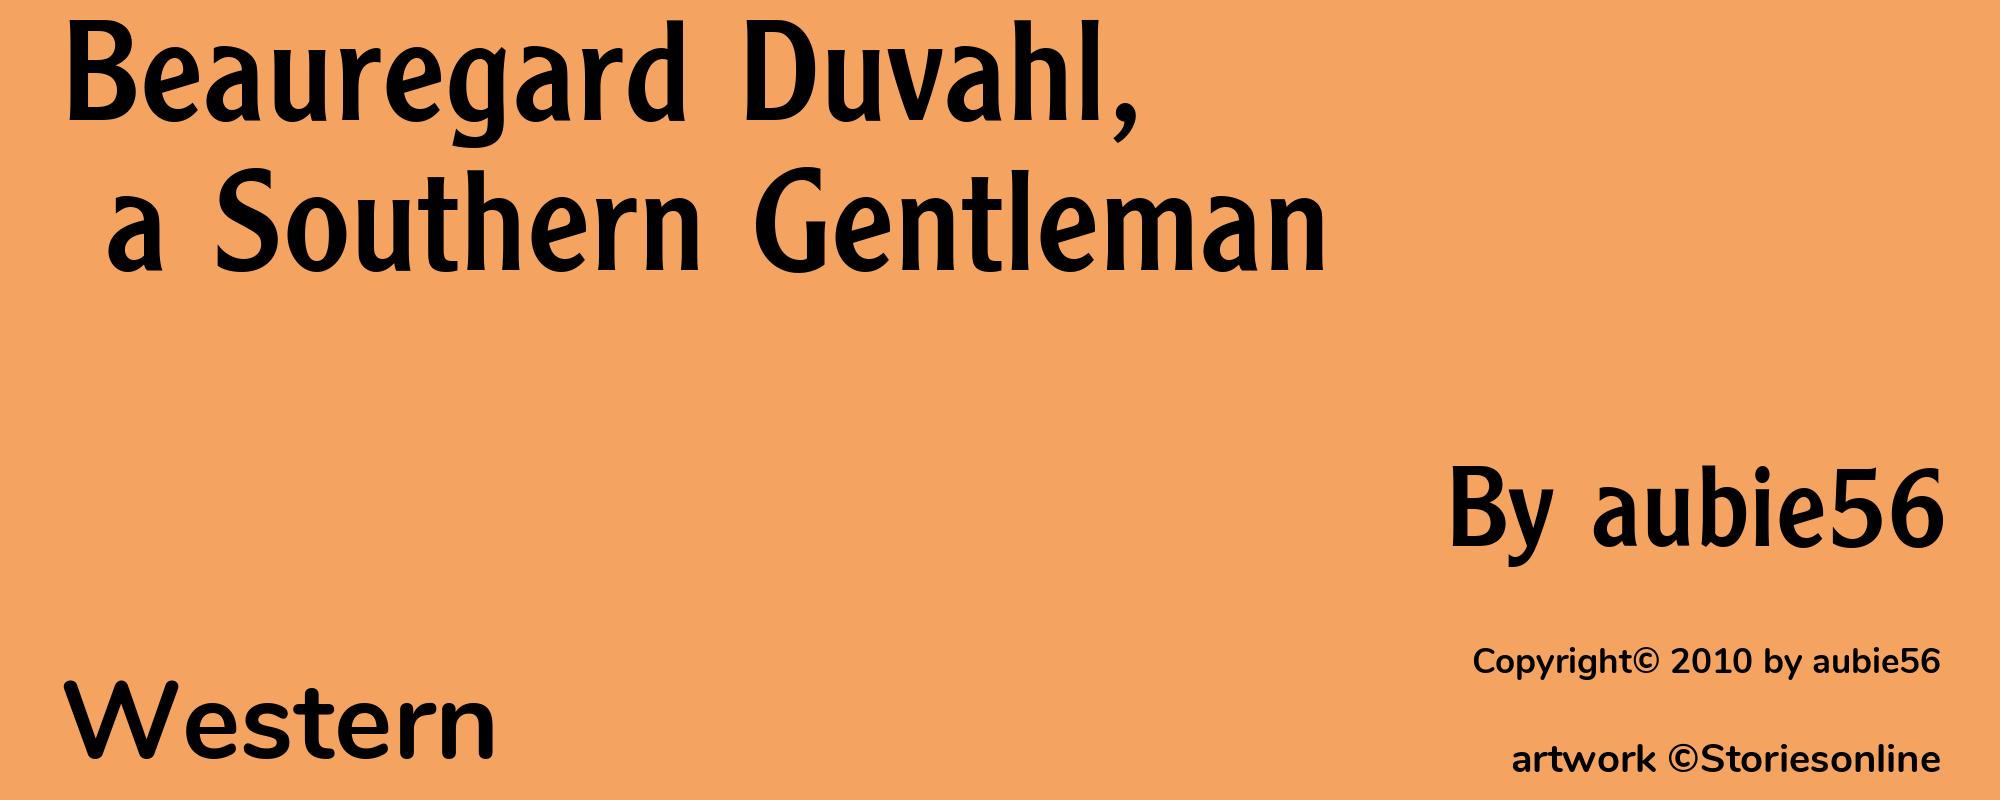 Beauregard Duvahl, a Southern Gentleman - Cover